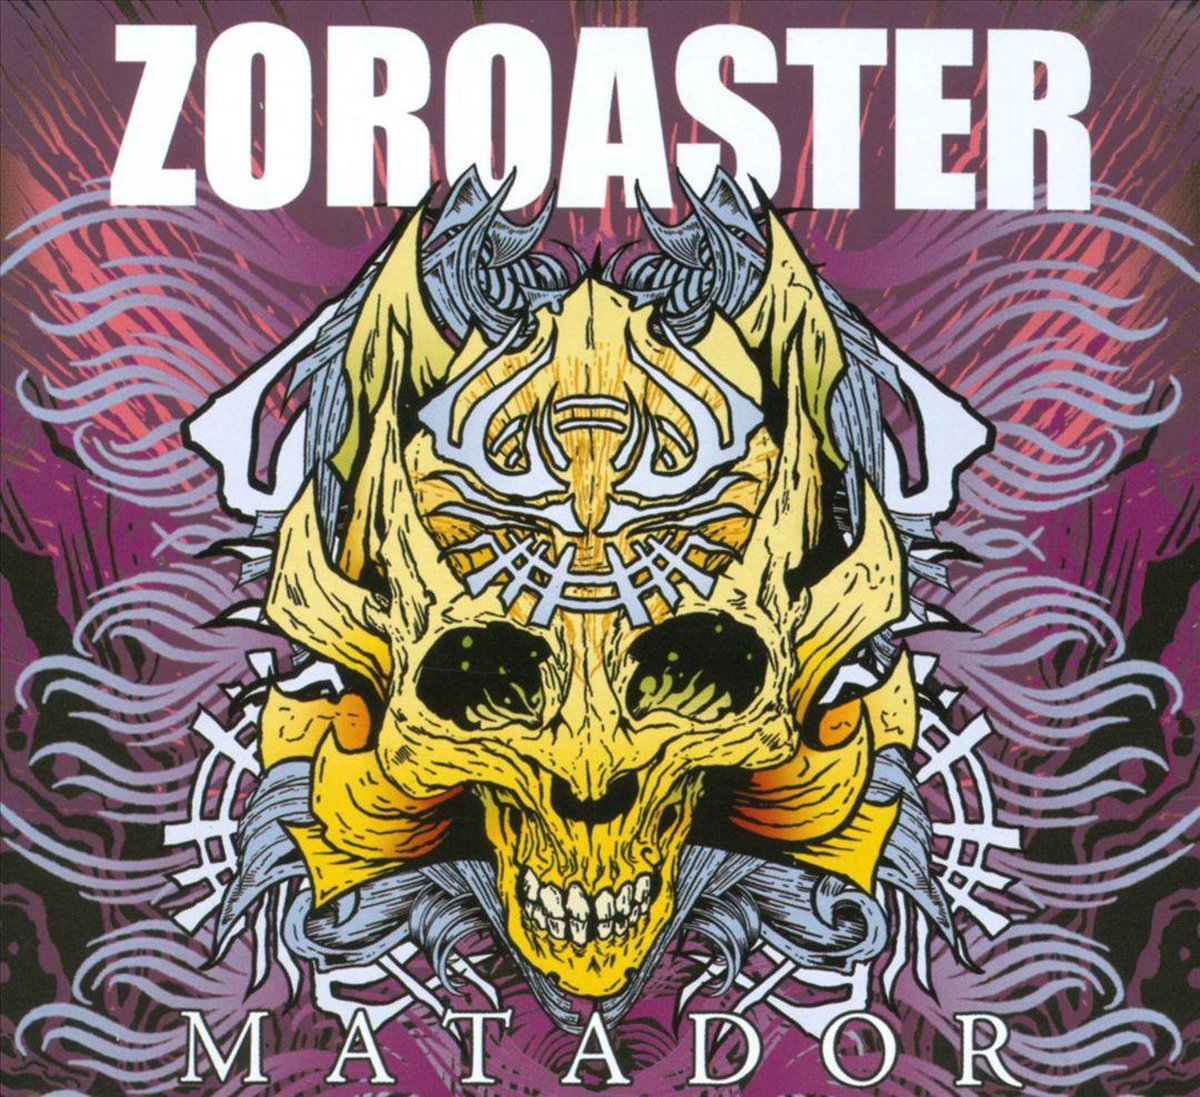 Matador - Zoroaster